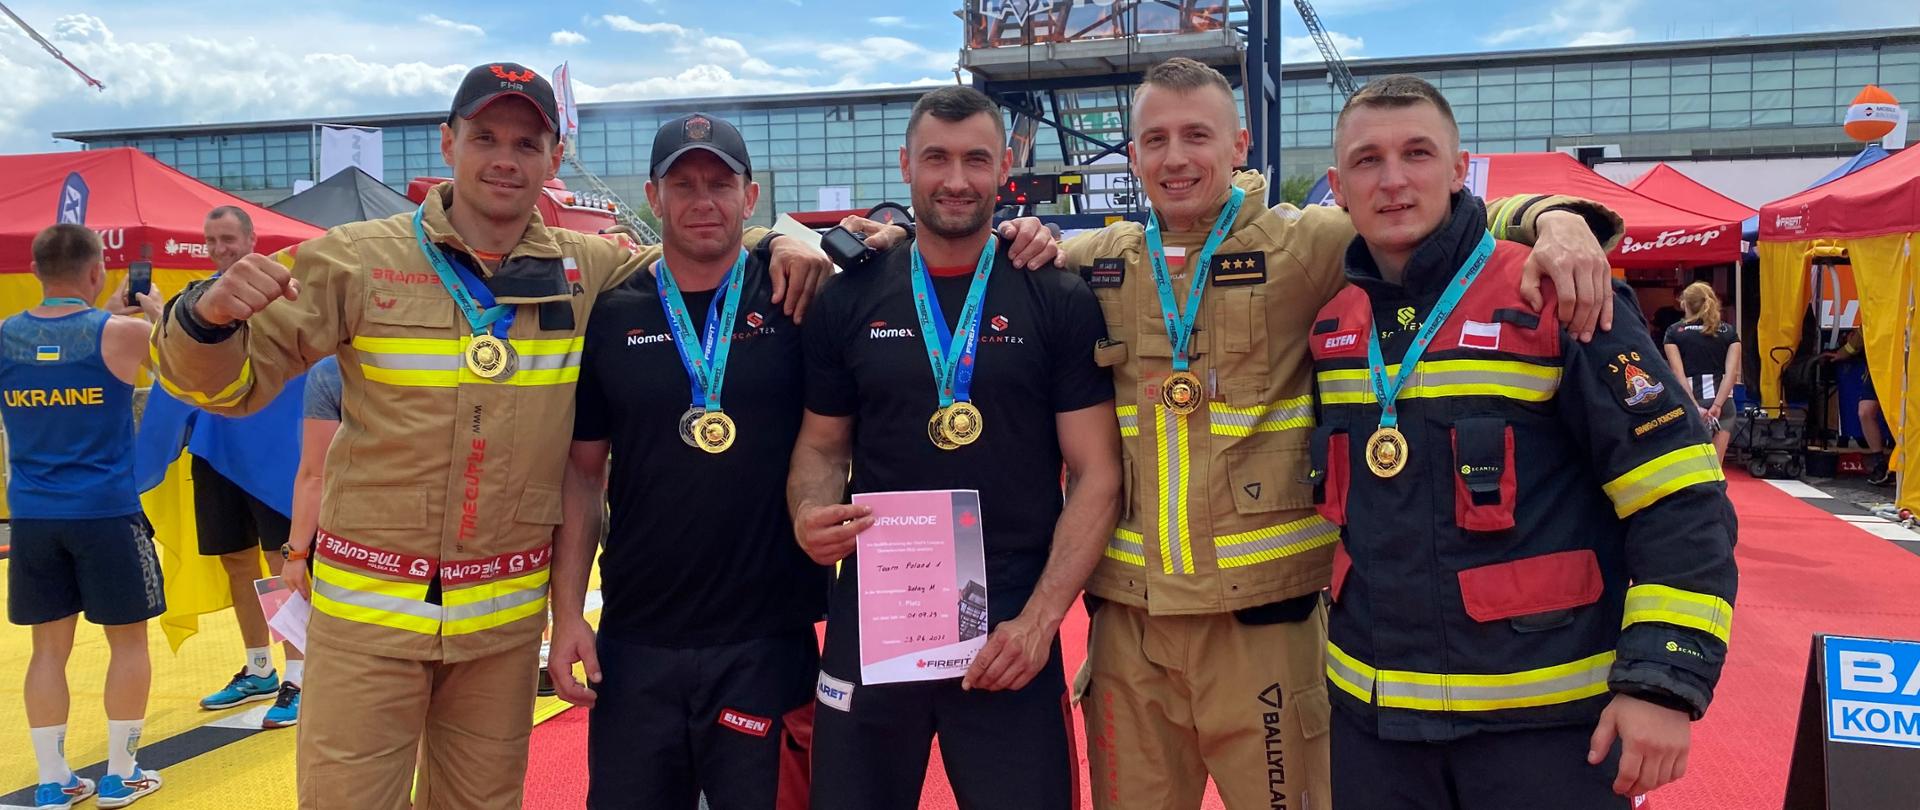 Zdjęcie grupowe pozowane. Polska drużyna składająca się z 5 strażaków, każdy z nich ma zawieszony medal na szyi. Jeden z nich prezentuje dyplom. 